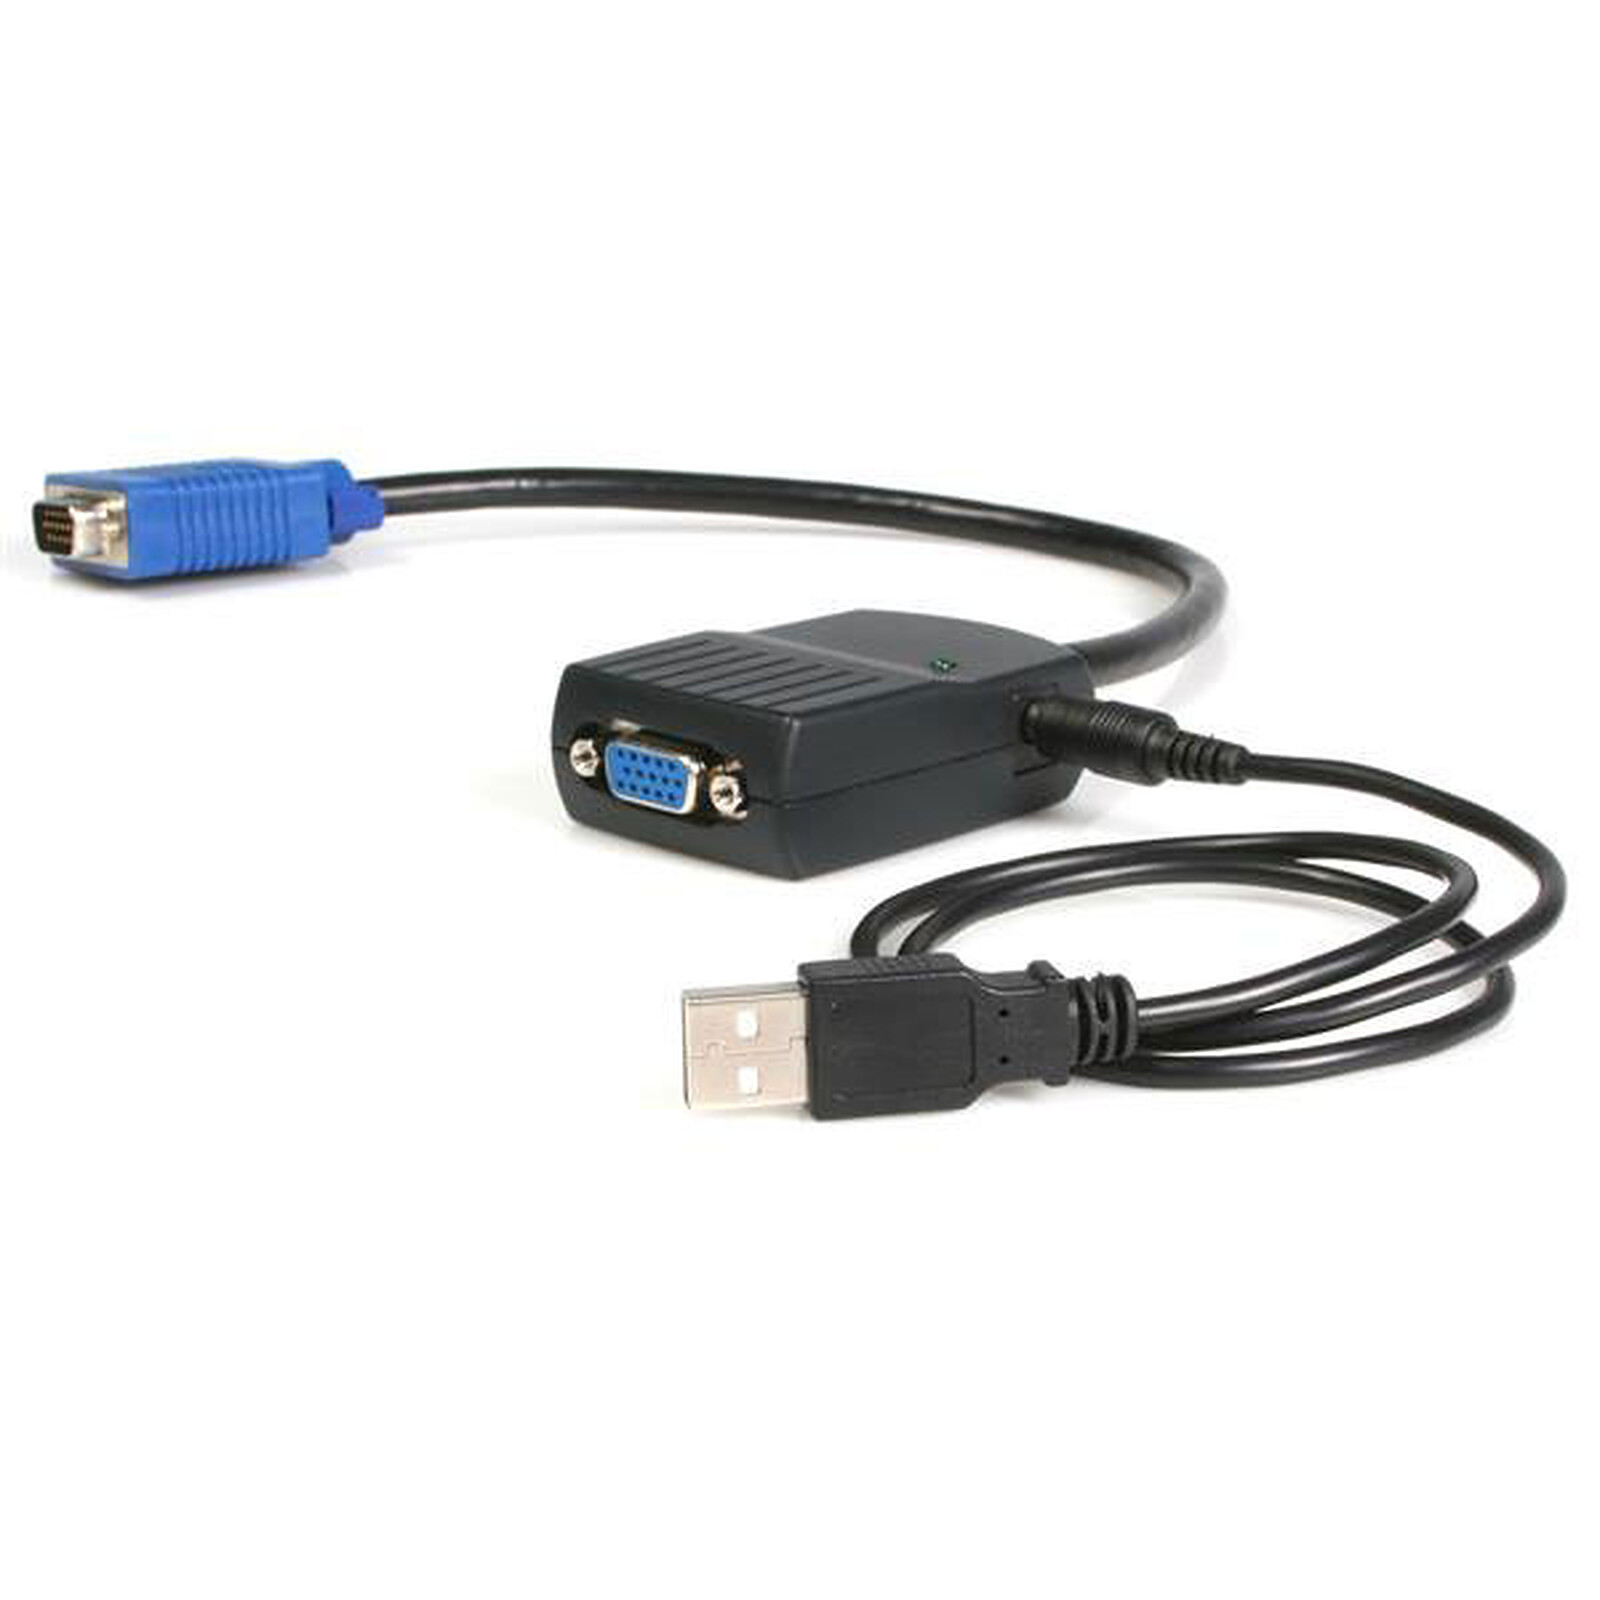 StarTech.com Câble répartiteur vidéo VGA alimenté par USB